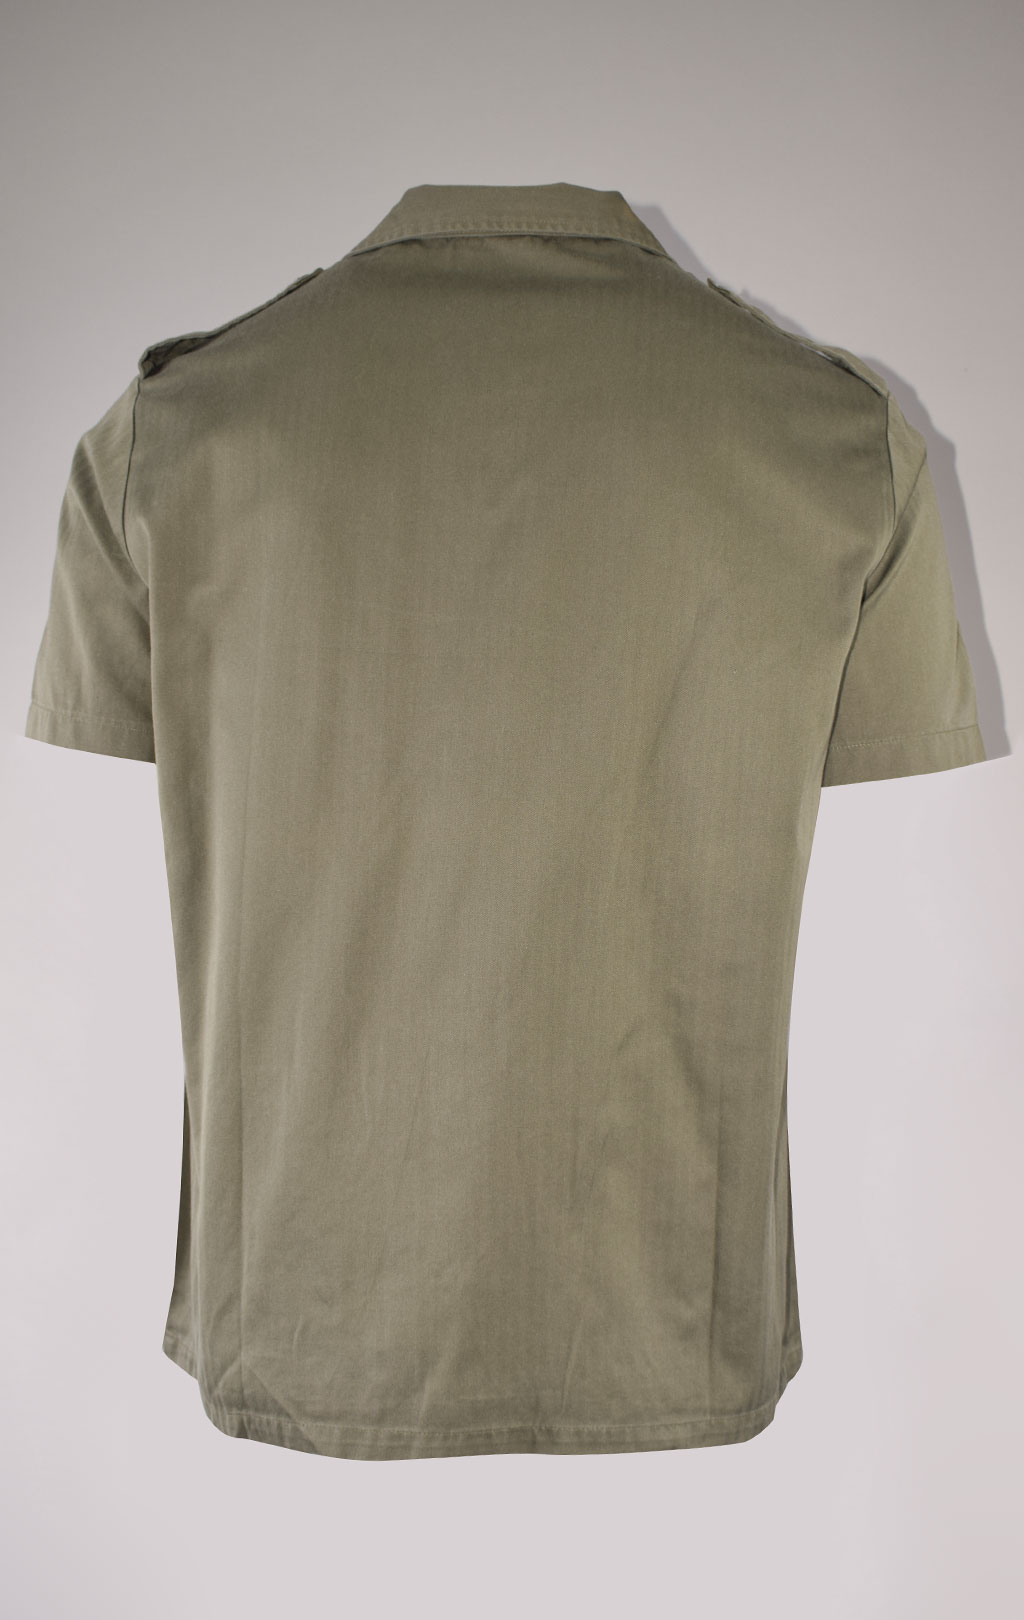 Рубашка короткий рукав olive б/у Франция